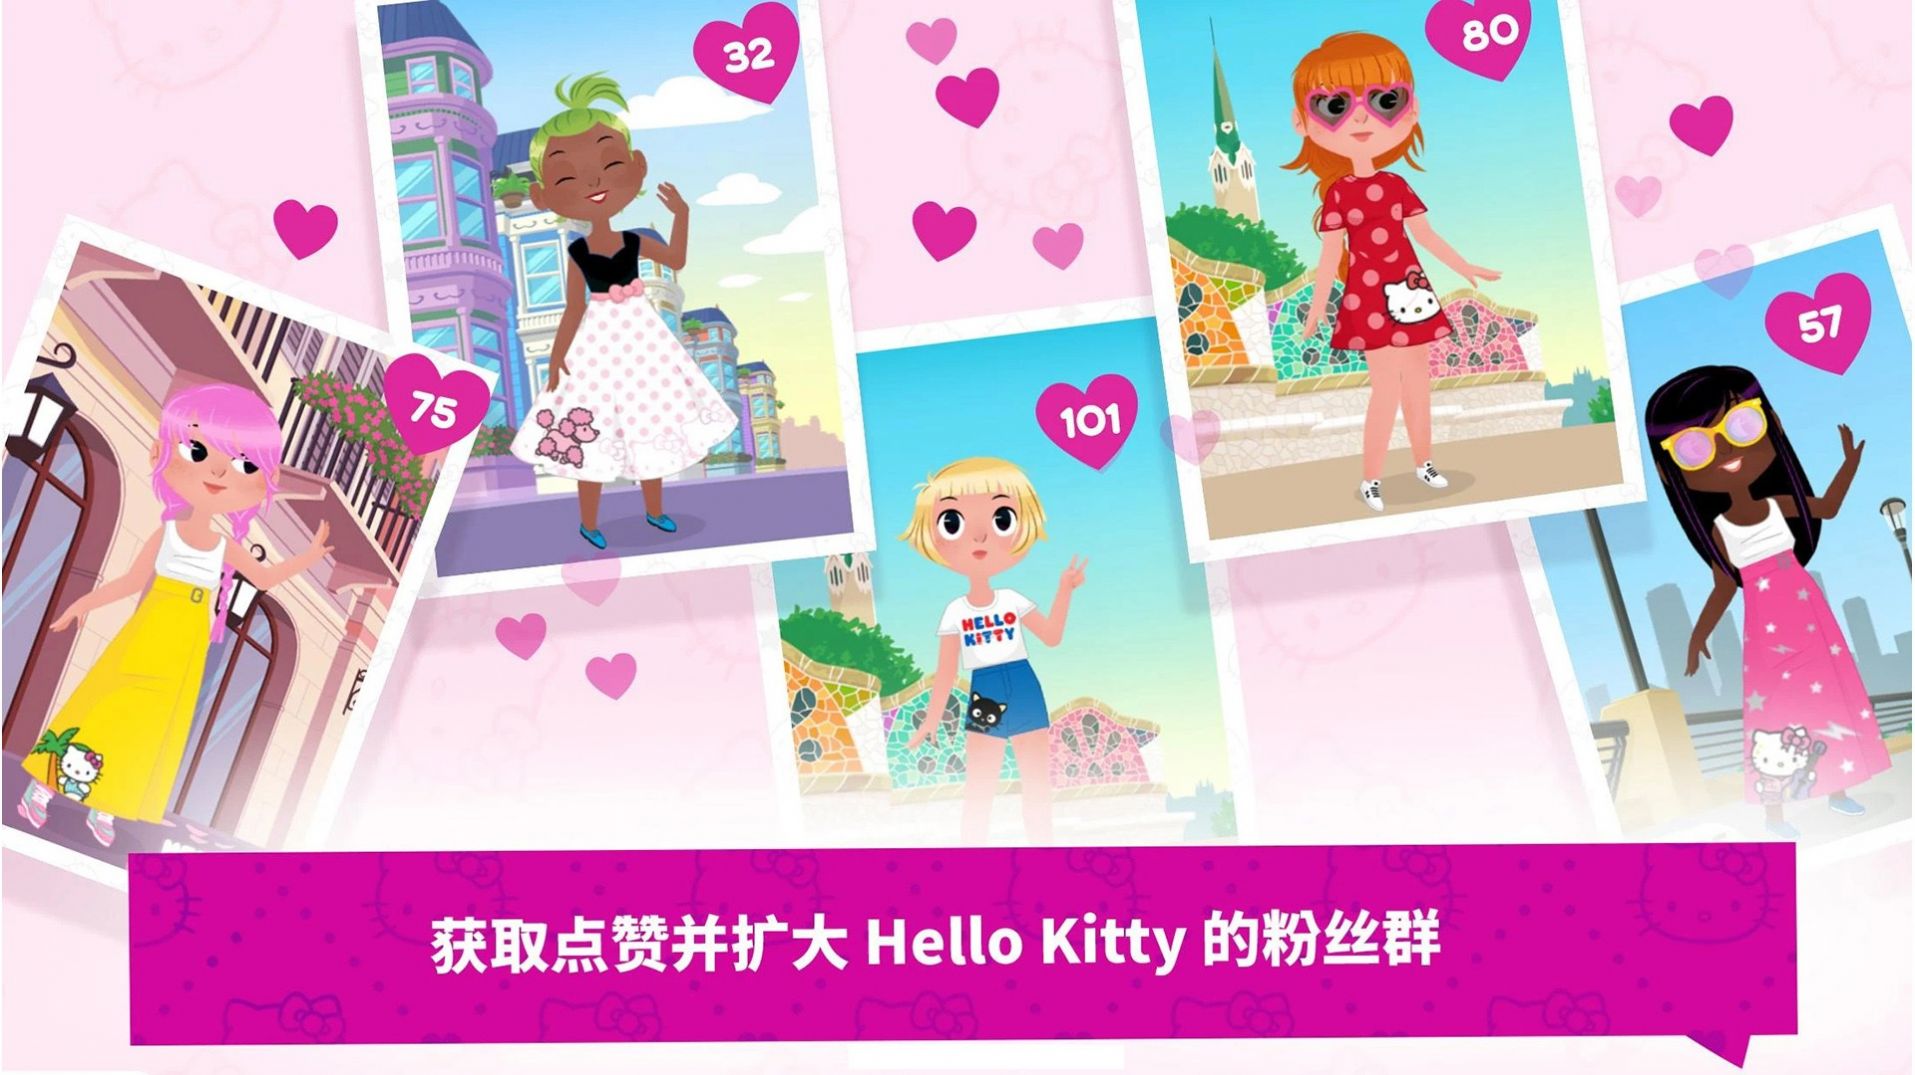 凯蒂猫梦幻时尚店游戏图1